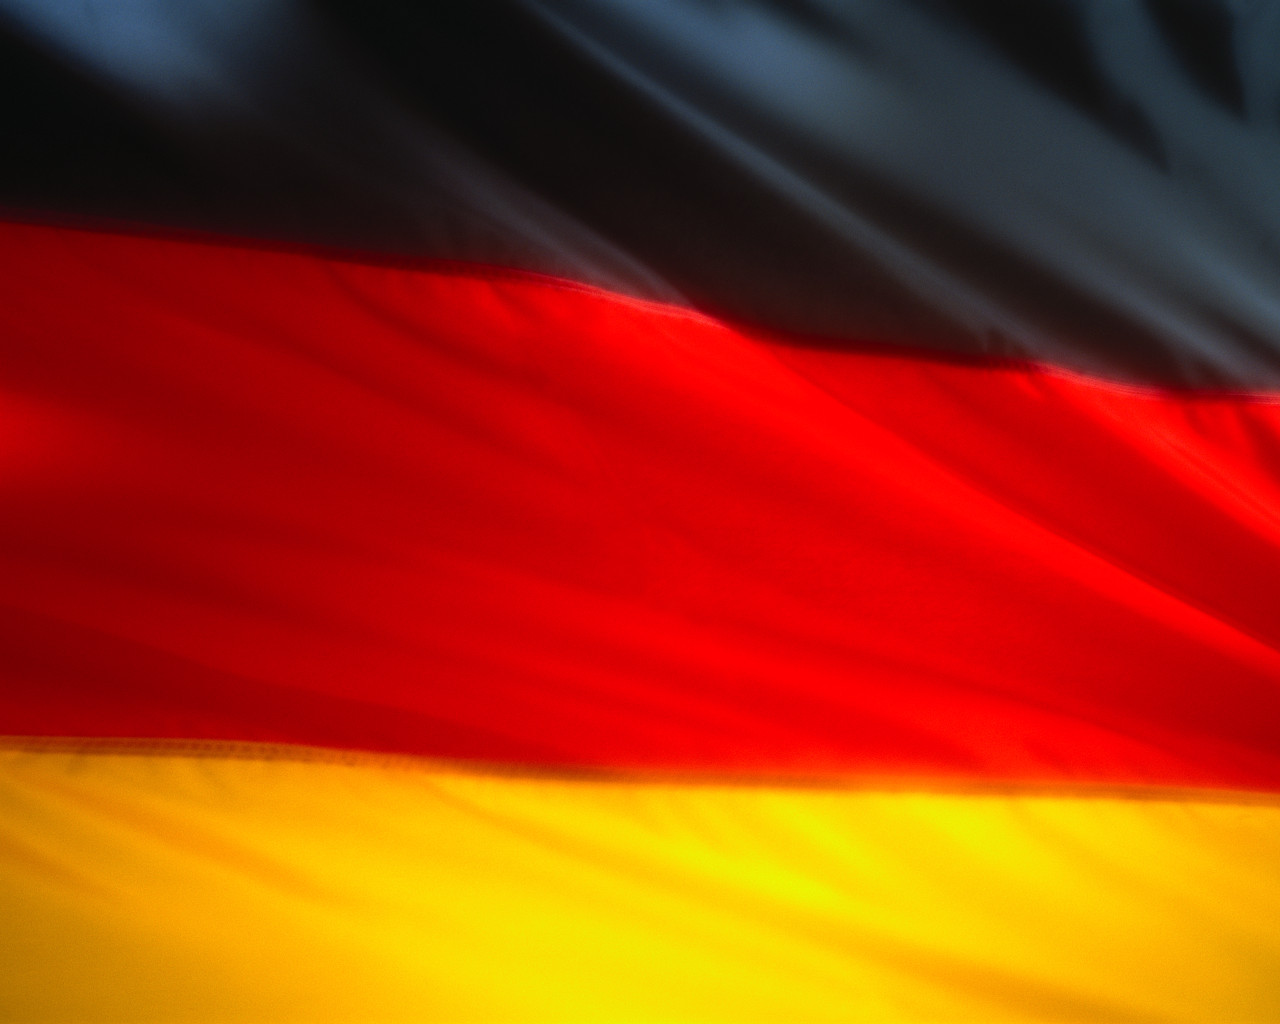 Rynki skoncentrowały się na wynikach aukcji niemieckich obligacji